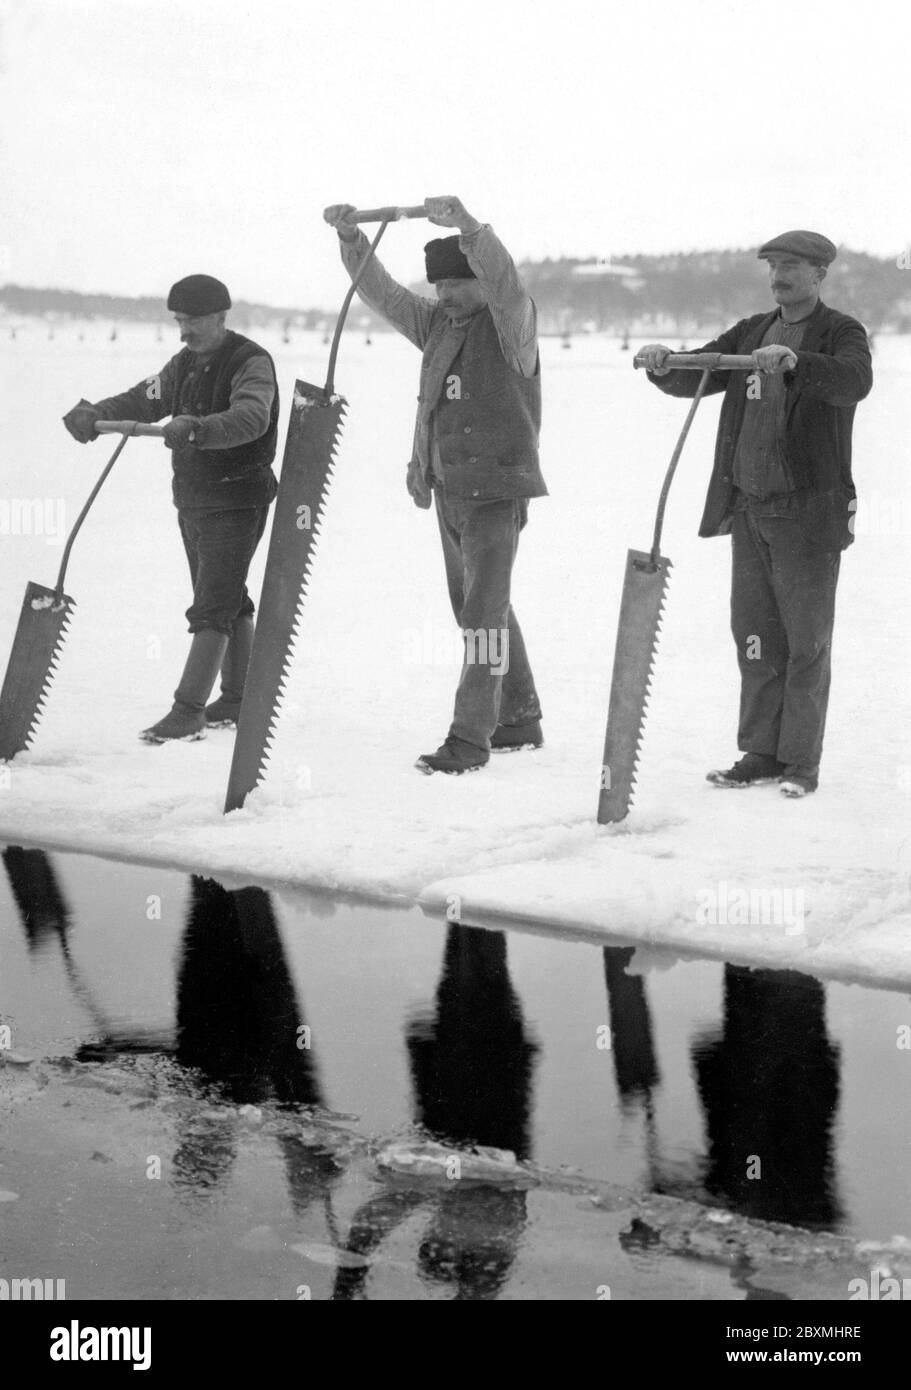 Lavoratori che raccolgono ghiaccio. Due uomini sono blocchi di segatura di ghiaccio da usare in case per mantenere alimentari fresco. Svezia 1922 Foto Stock